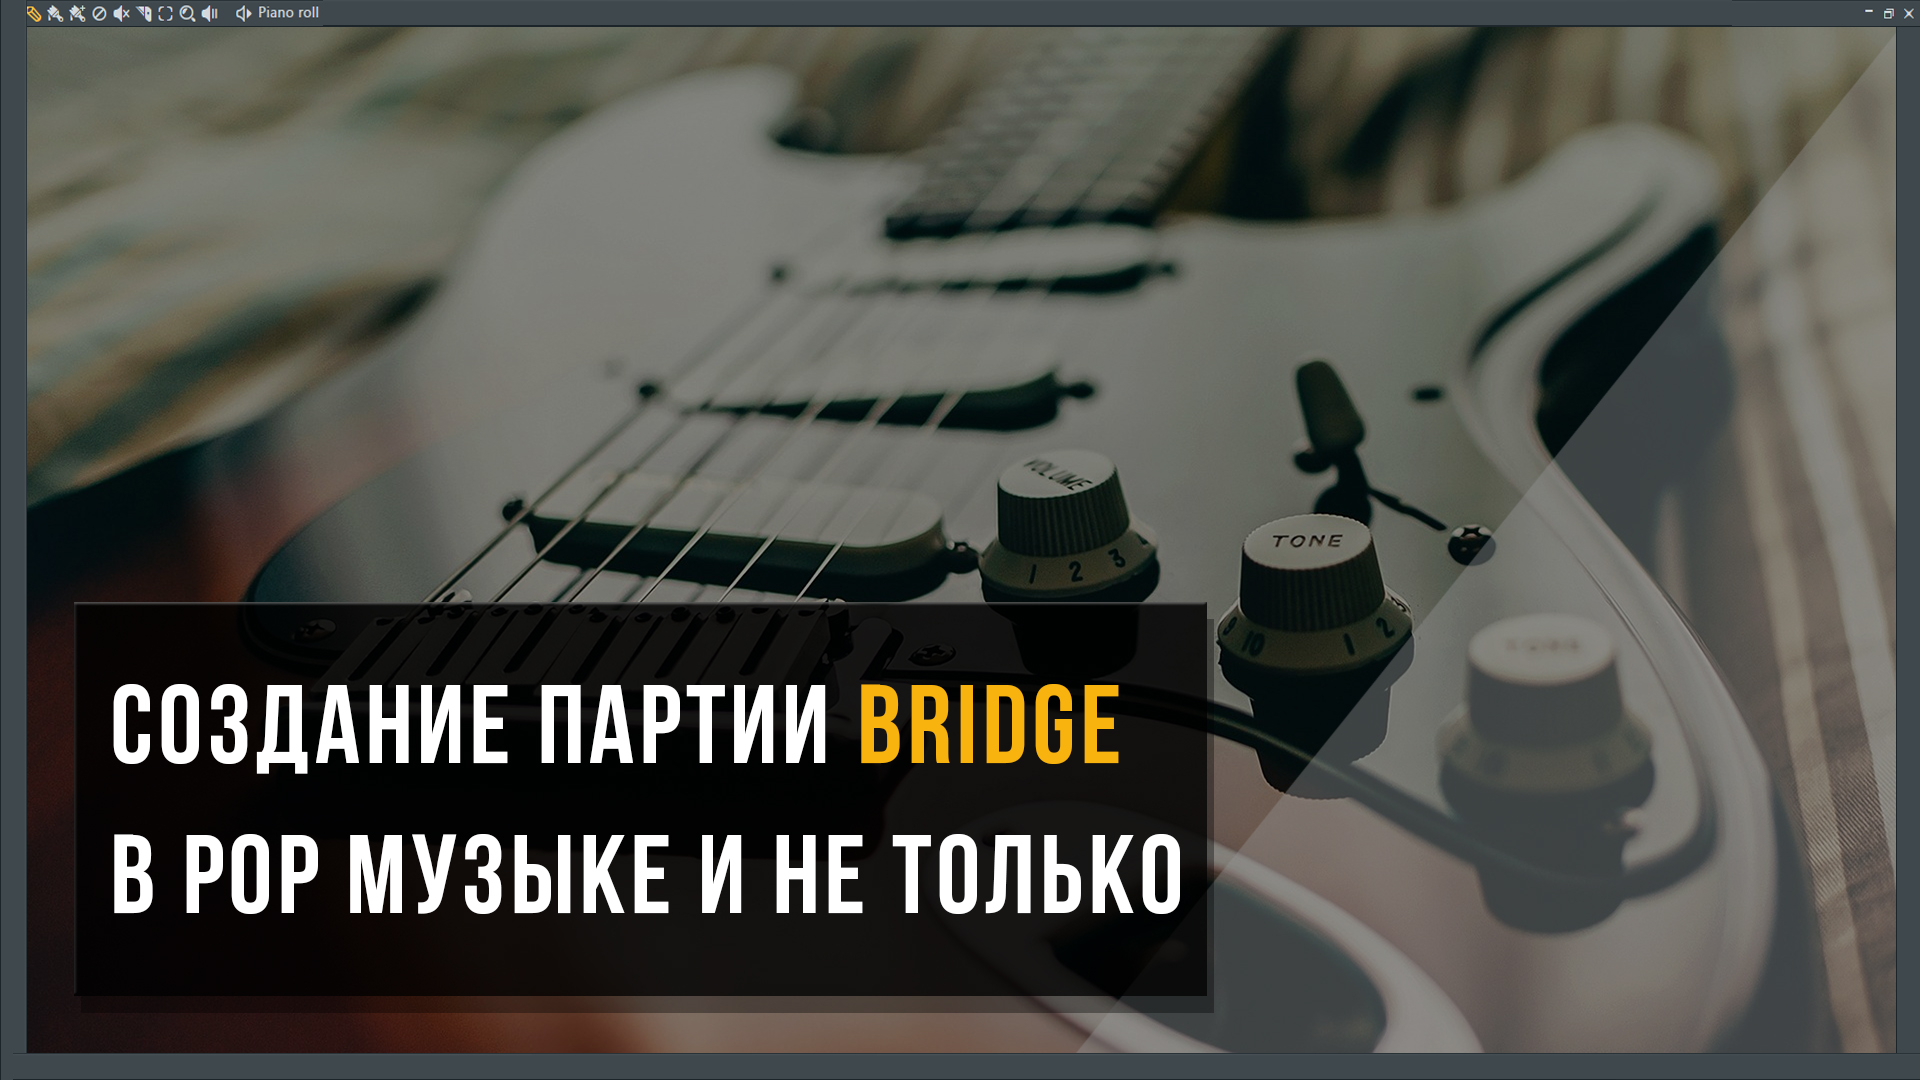 Как создавать партии Bridge в аранжировке Pop музыки